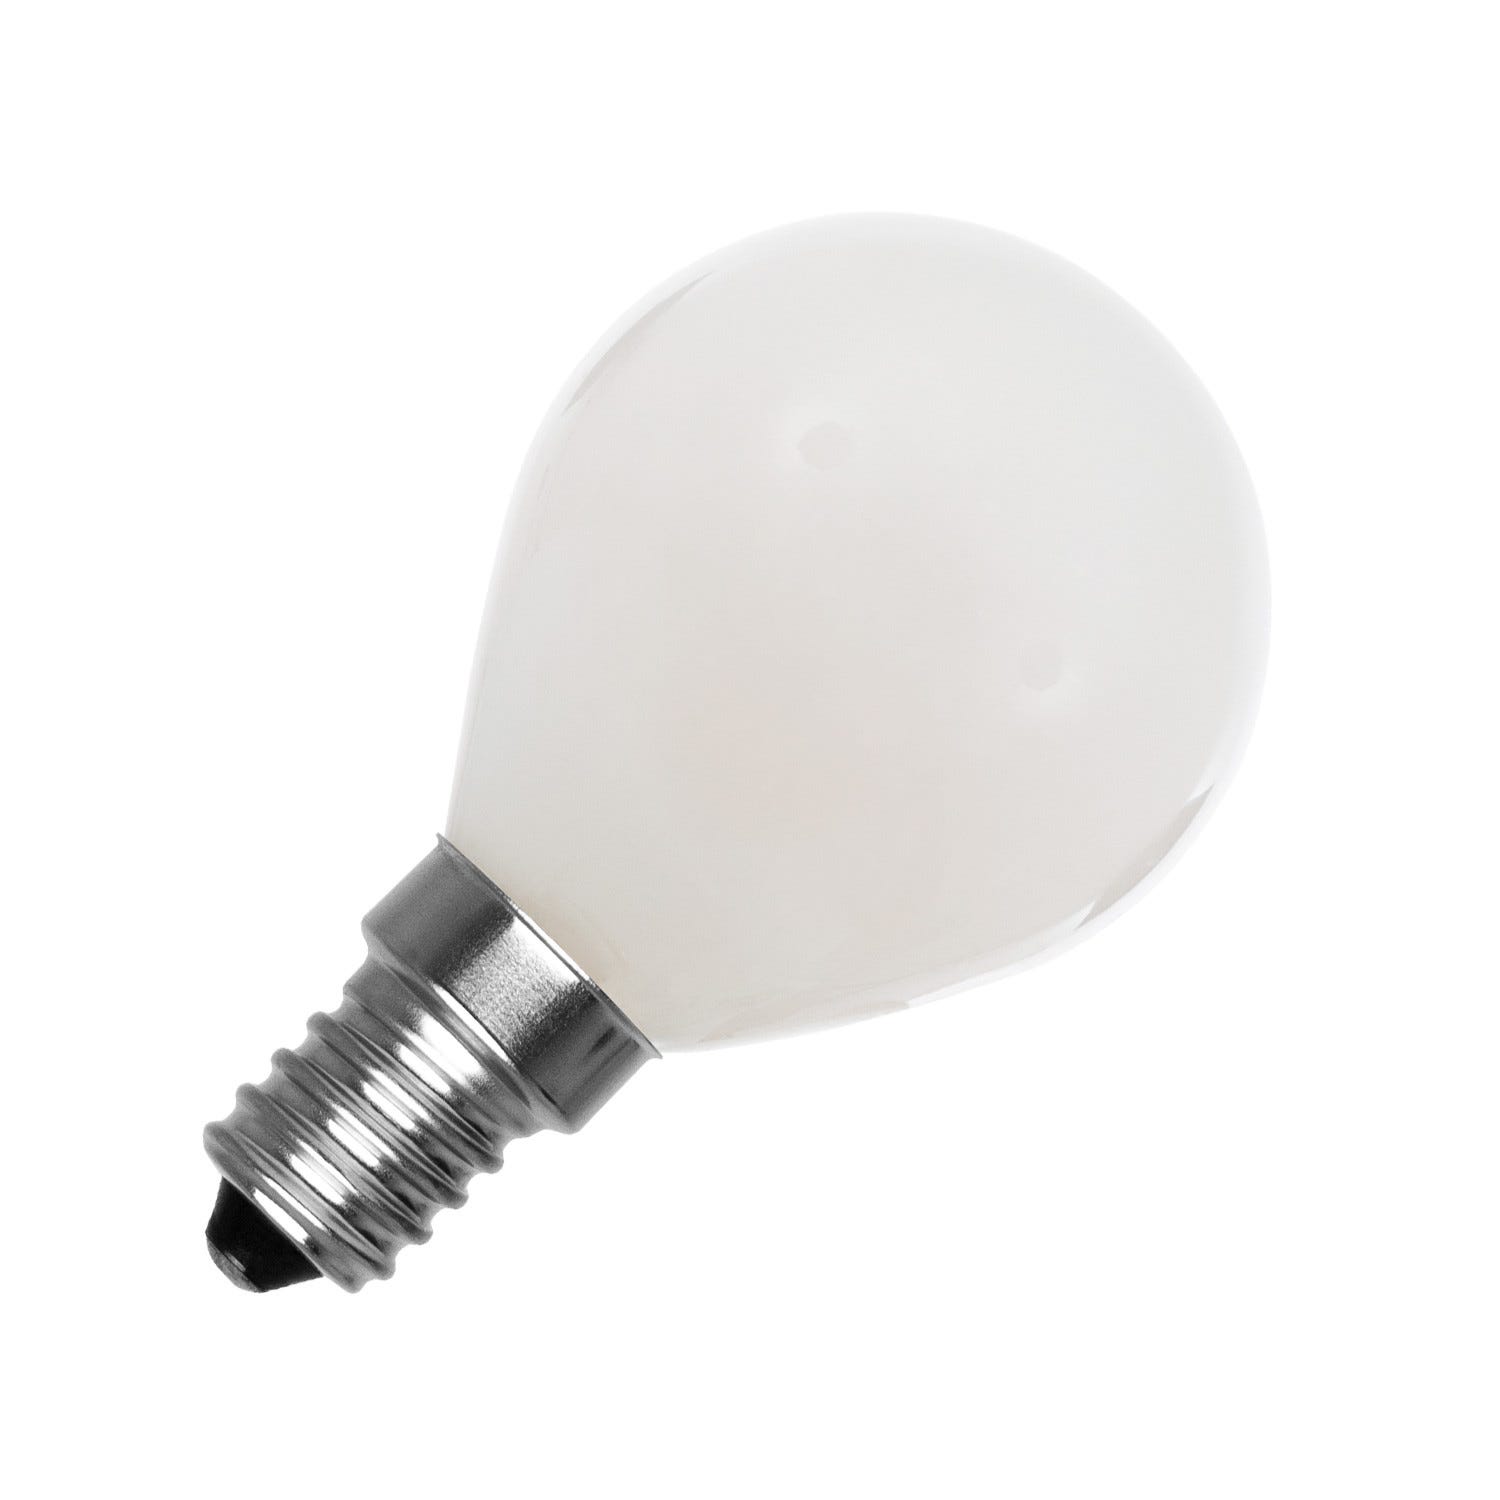 ✓ Elbat Ampoule LED G45 6W 500LM E14 Lumière Froide - Économie d